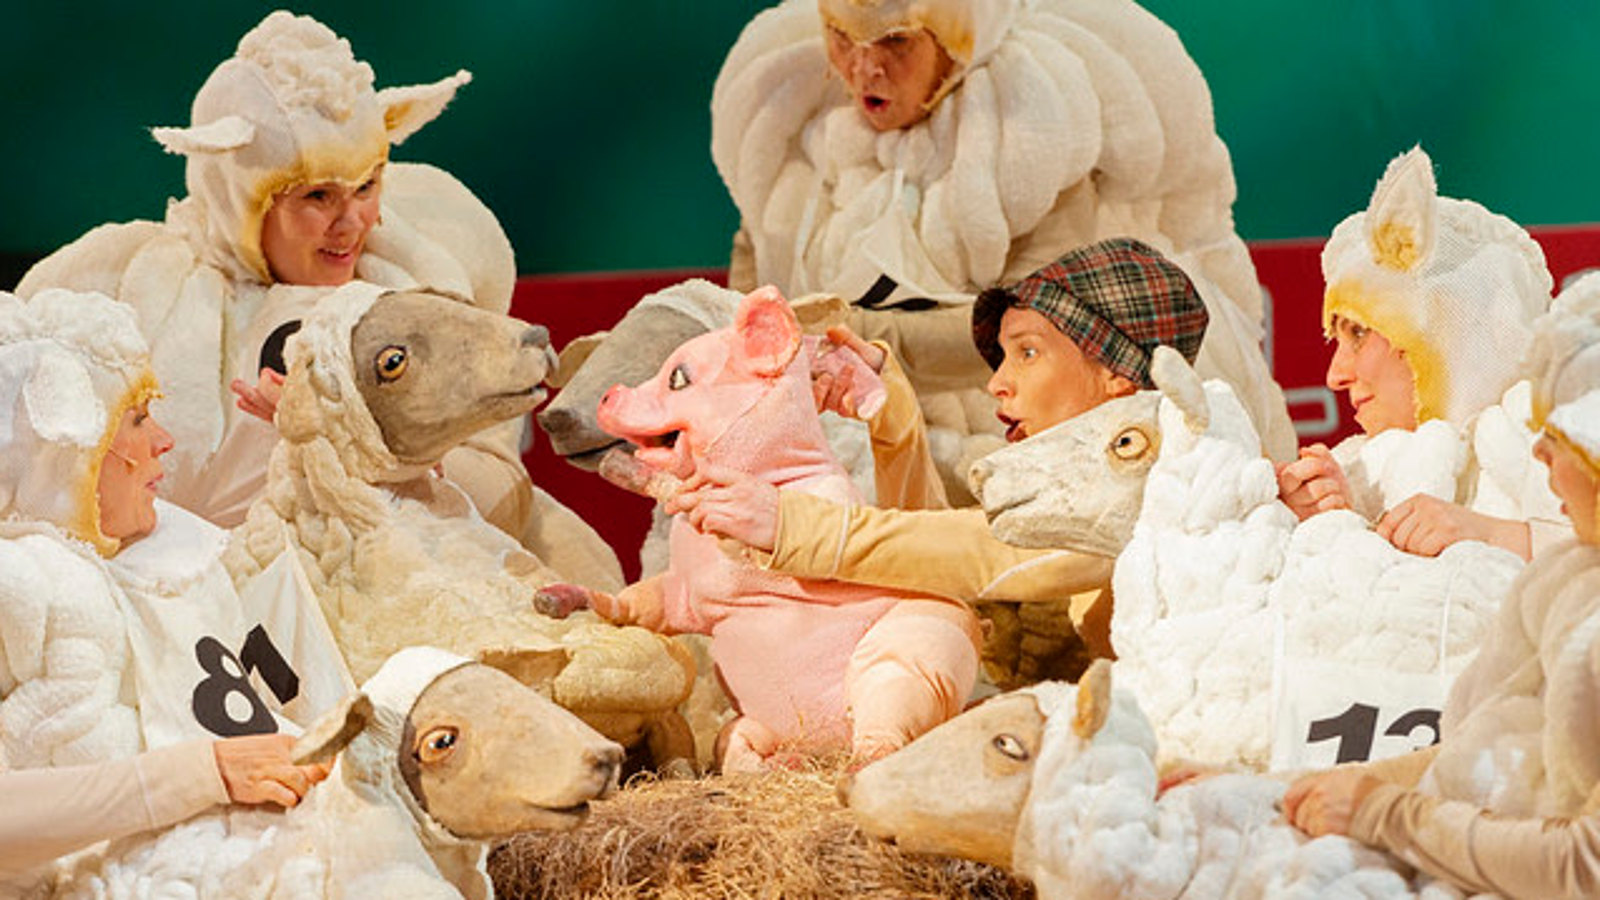 Kuvassa on näyttelijöitä lampaiden vaatteissa ja keskellä on Babe-possu nukkena ja muutama lammas.  Lampaat ovat valkoisia ja Babe vaaleanpunainen.